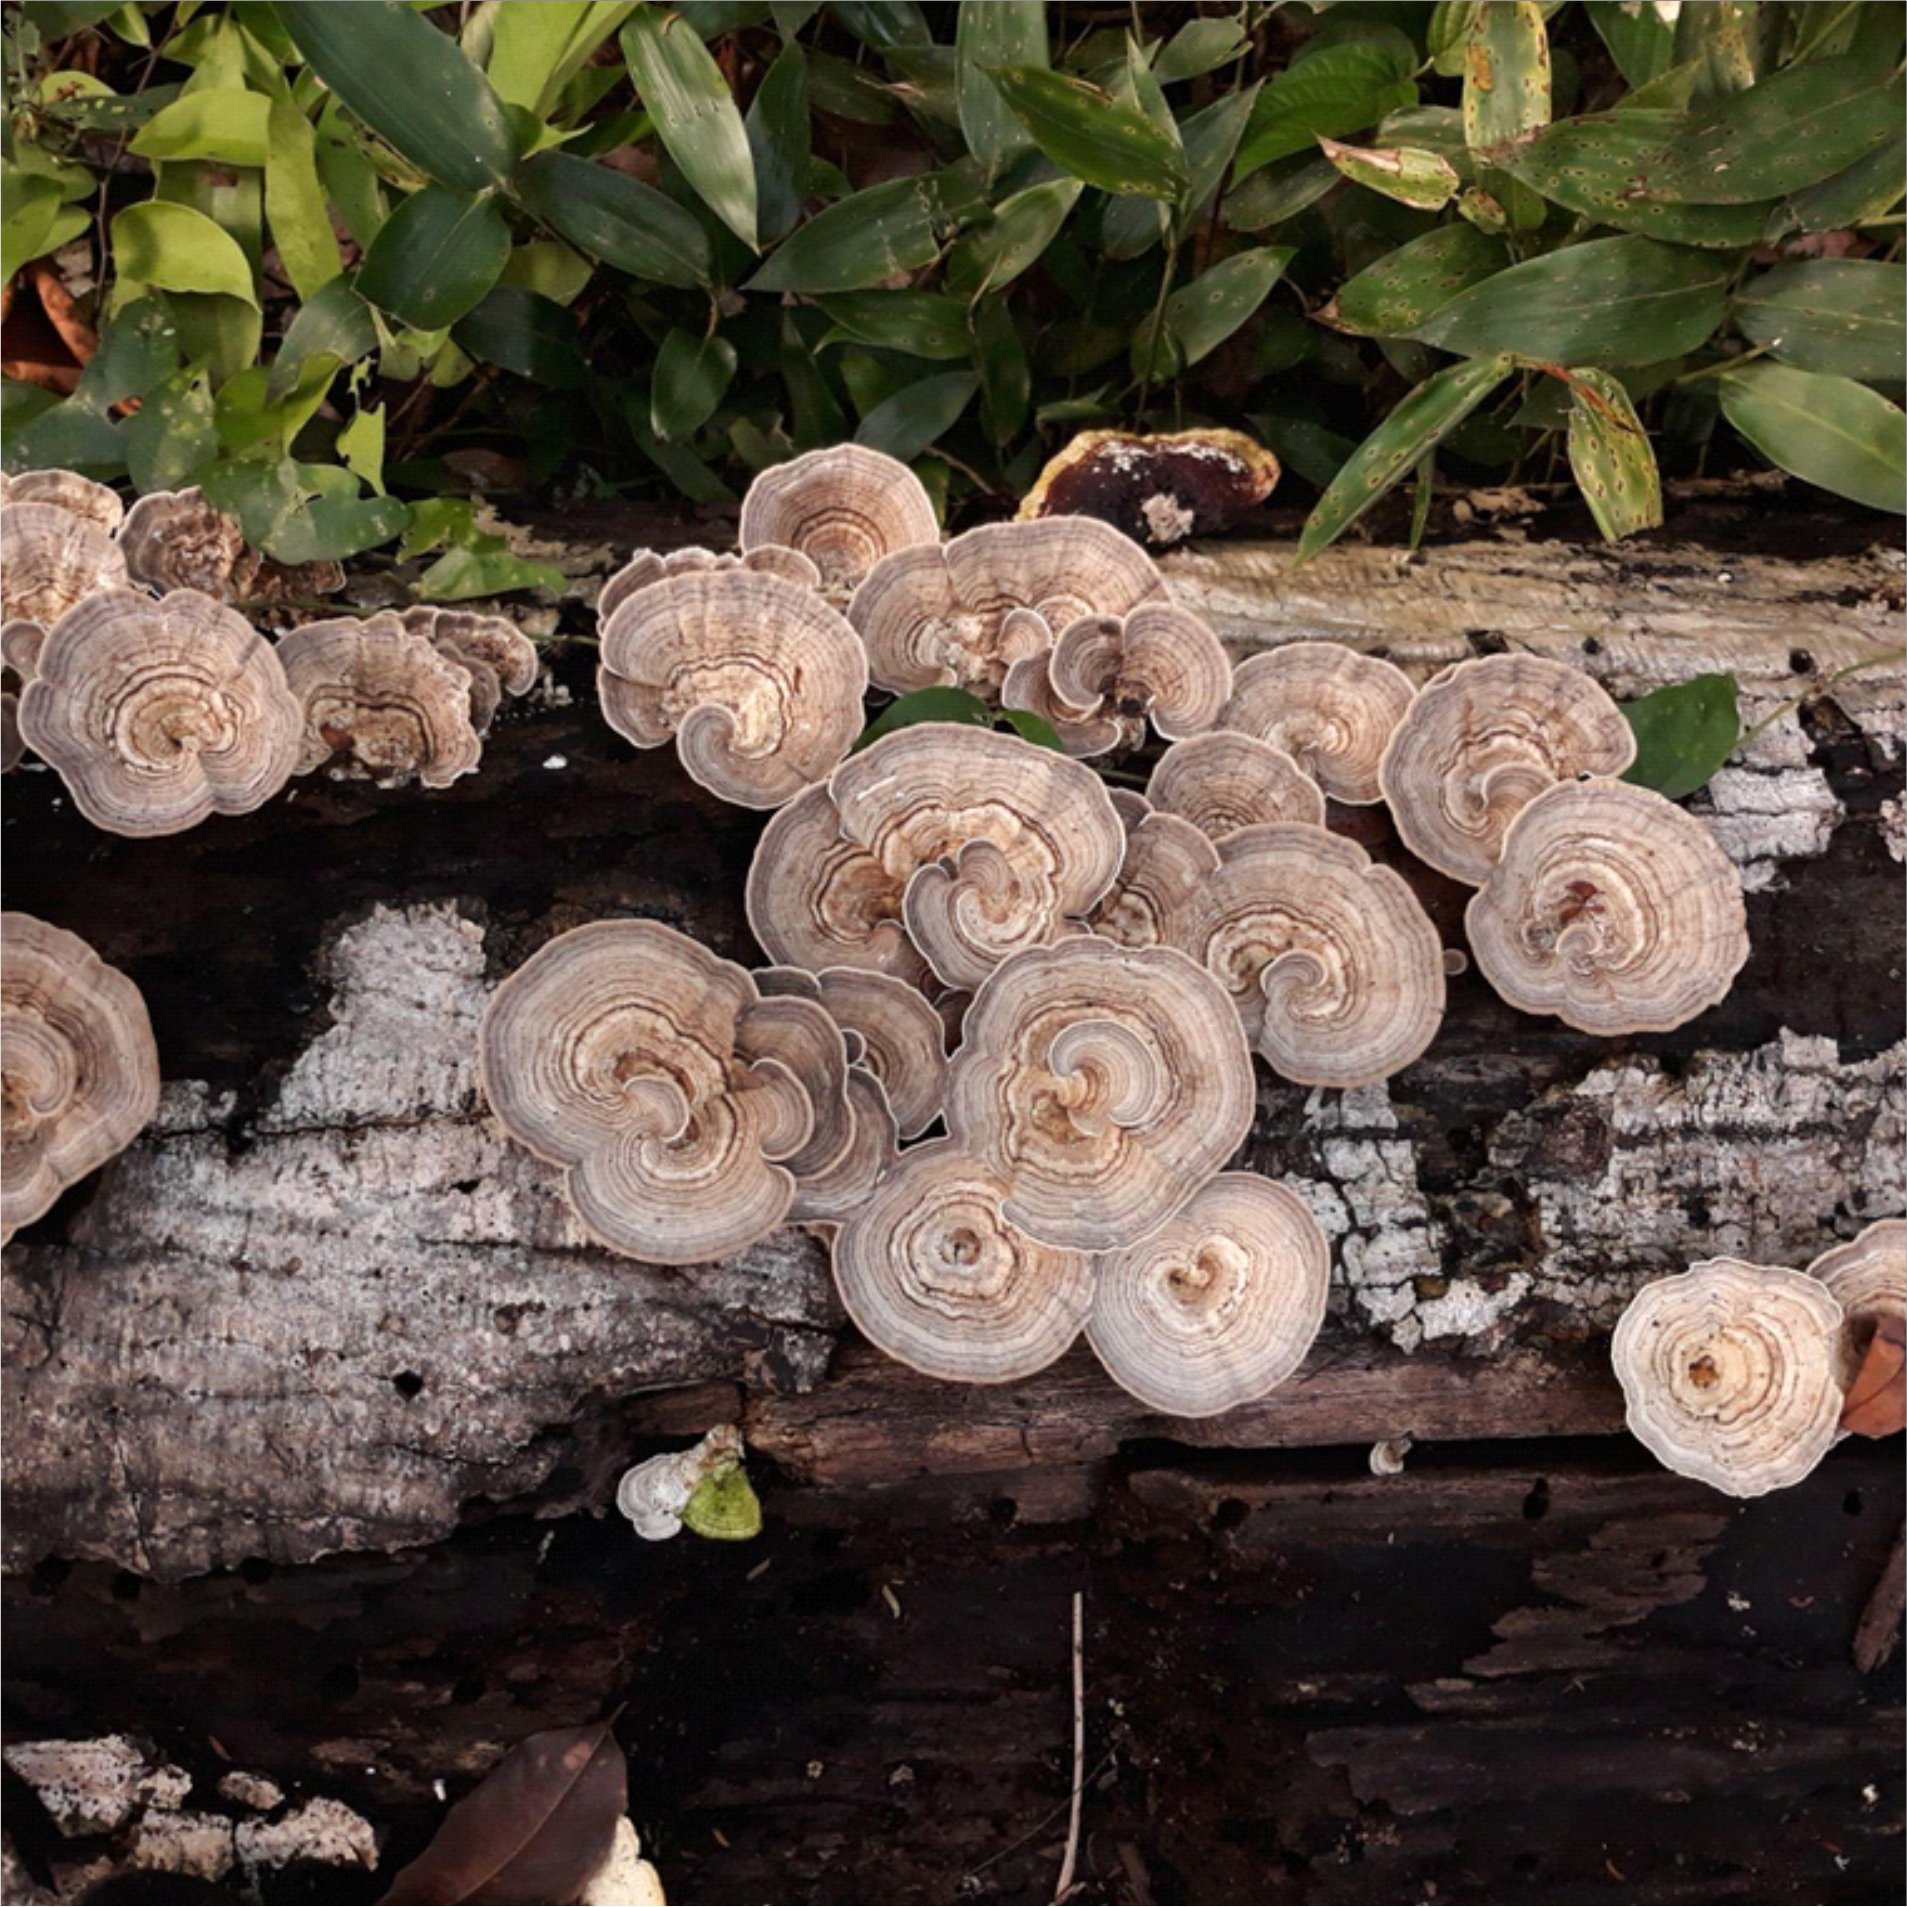 Na mata, um encontro de cogumelos sob tronco em decomposição. | Autor: Gracinaldo Gonçalves de Melo